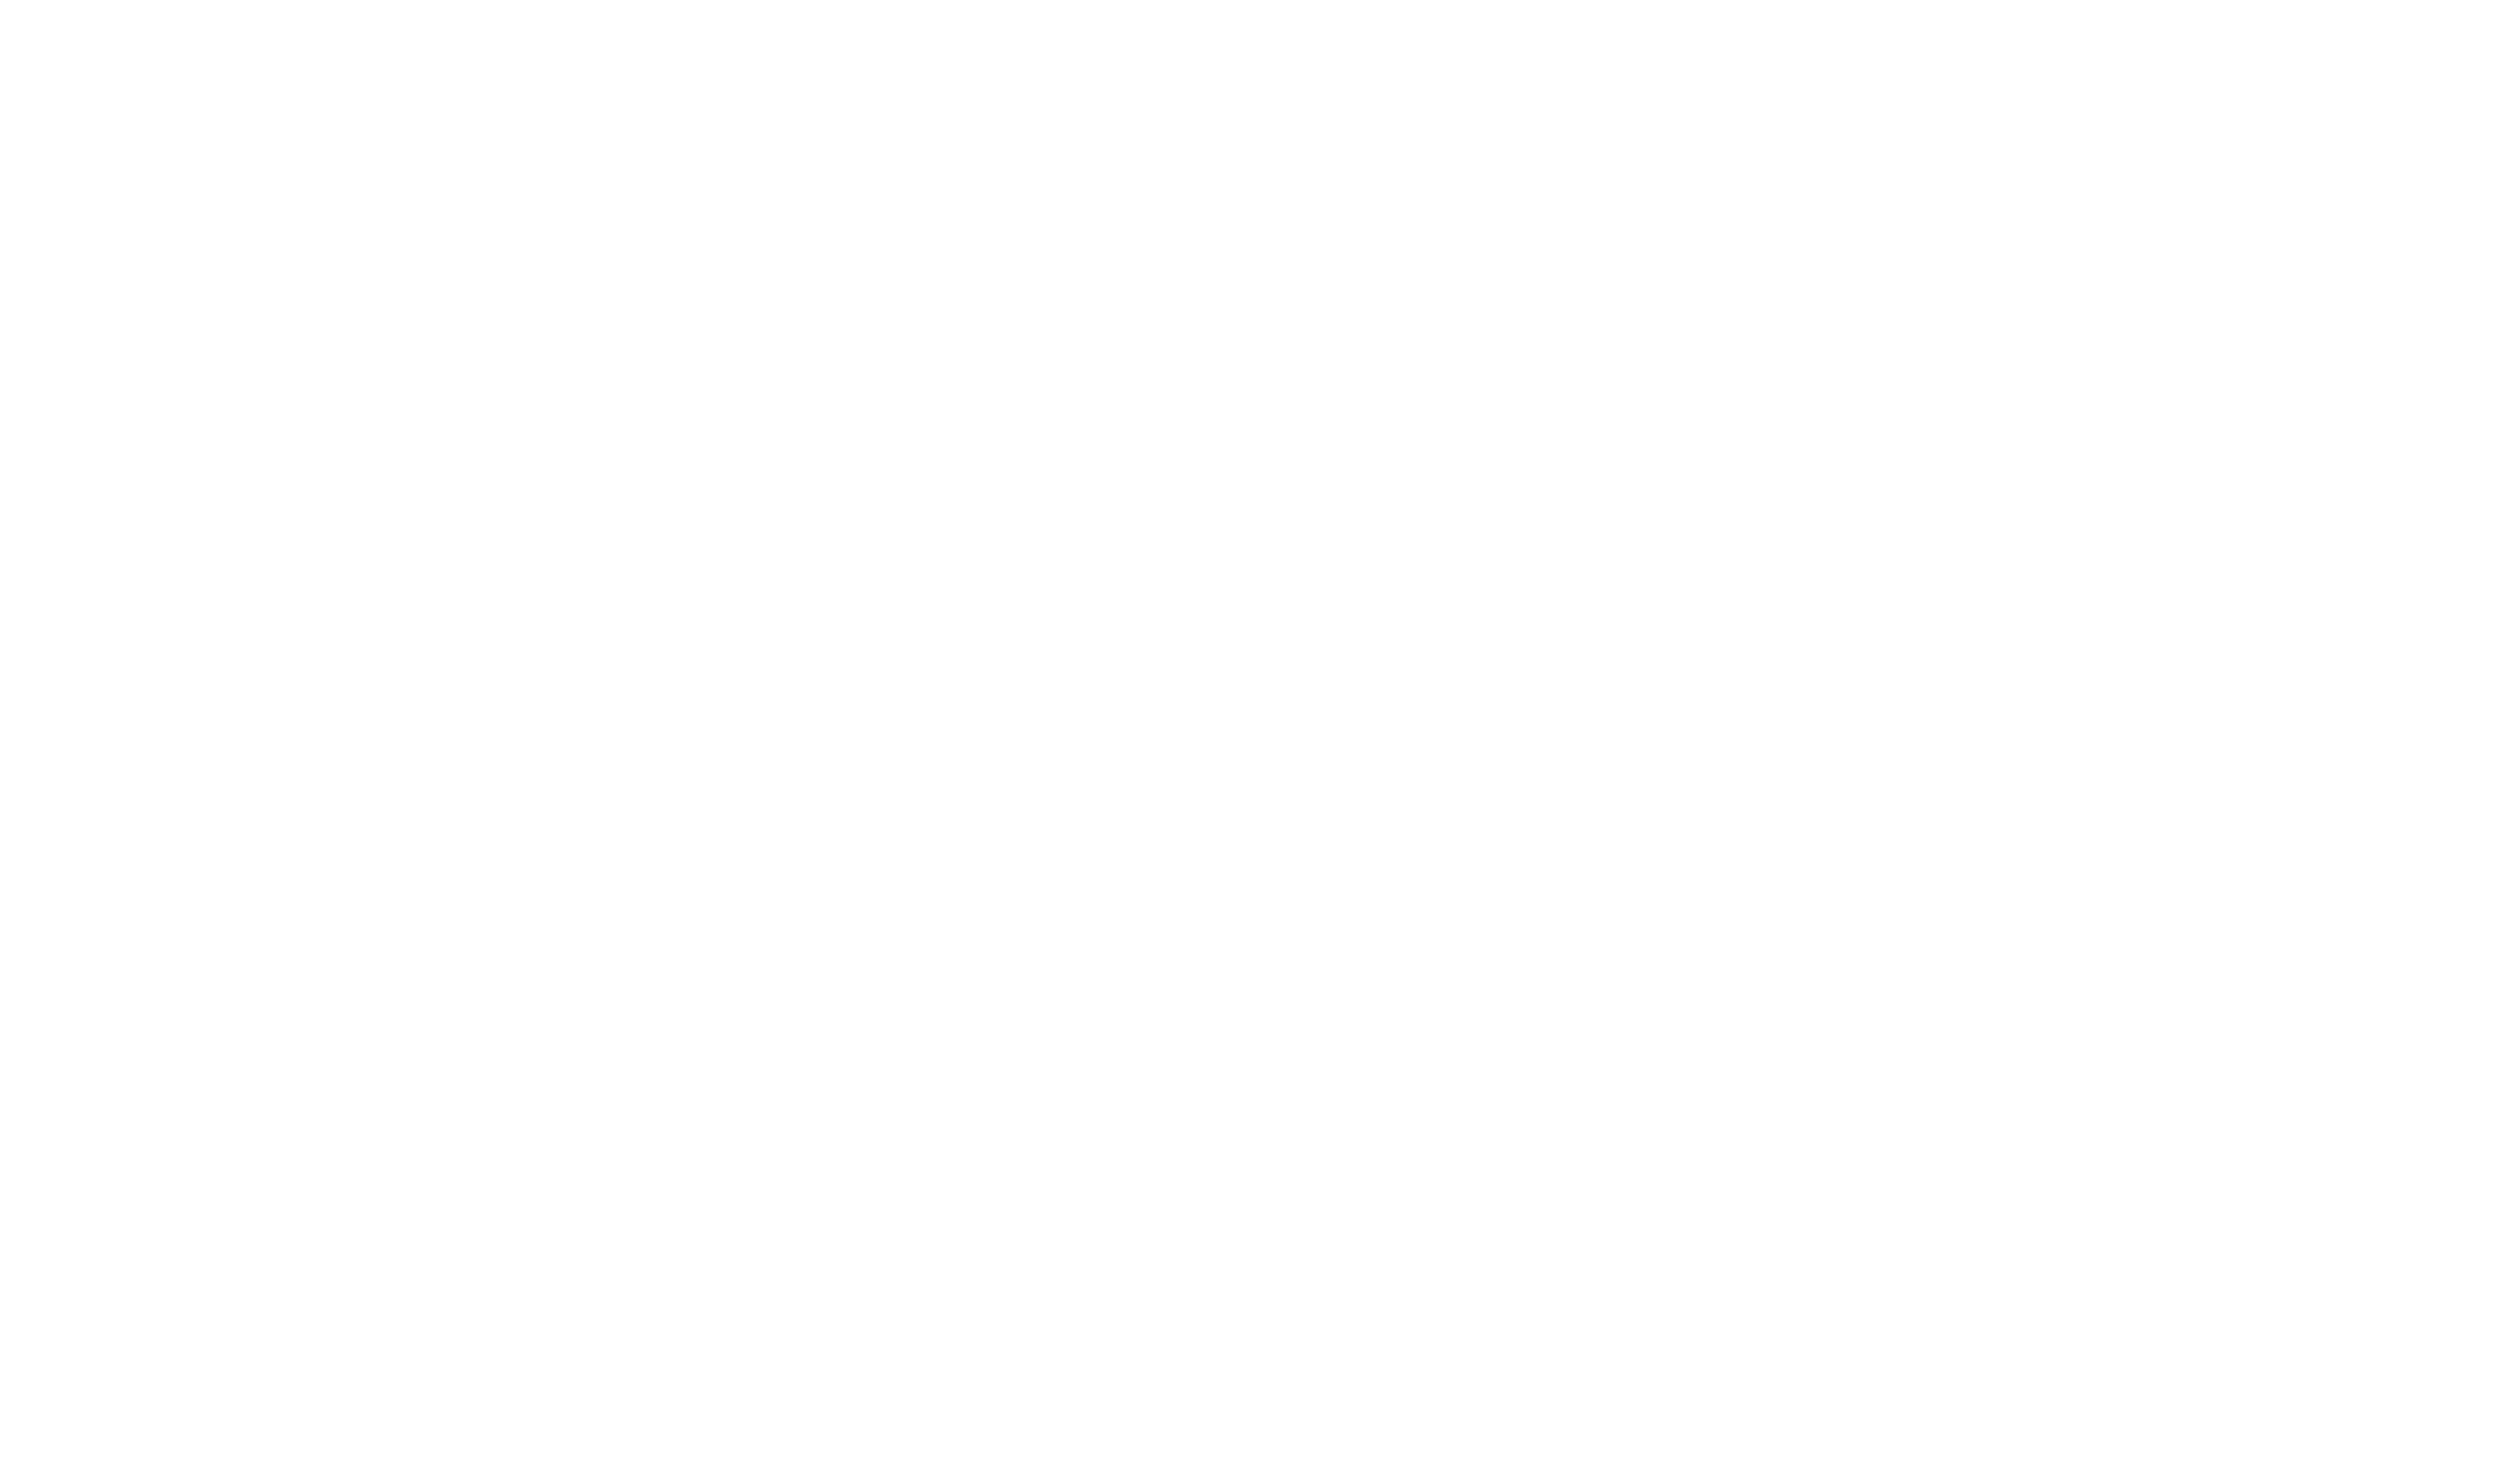 LINDAT/CLARIAH-CZ